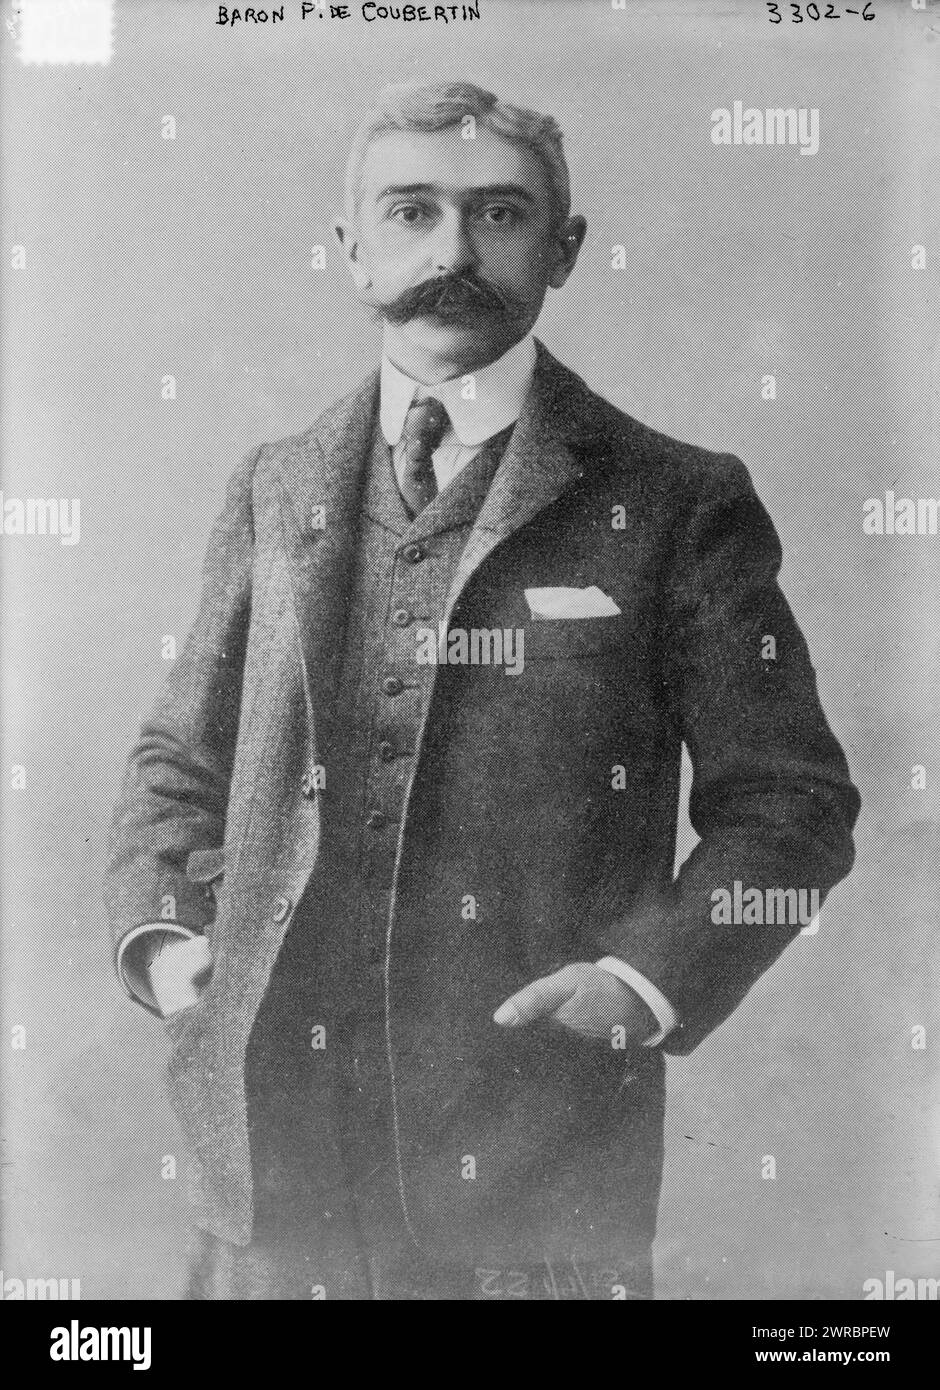 Barone P. de Coubertin, la fotografia mostra Pierre de Frédy, barone de Coubertin (1863-1937), che era un educatore francese e fondò il Comitato Olimpico Internazionale., 1915 gennaio 7, Glass negative, 1 negative: Glass Foto Stock